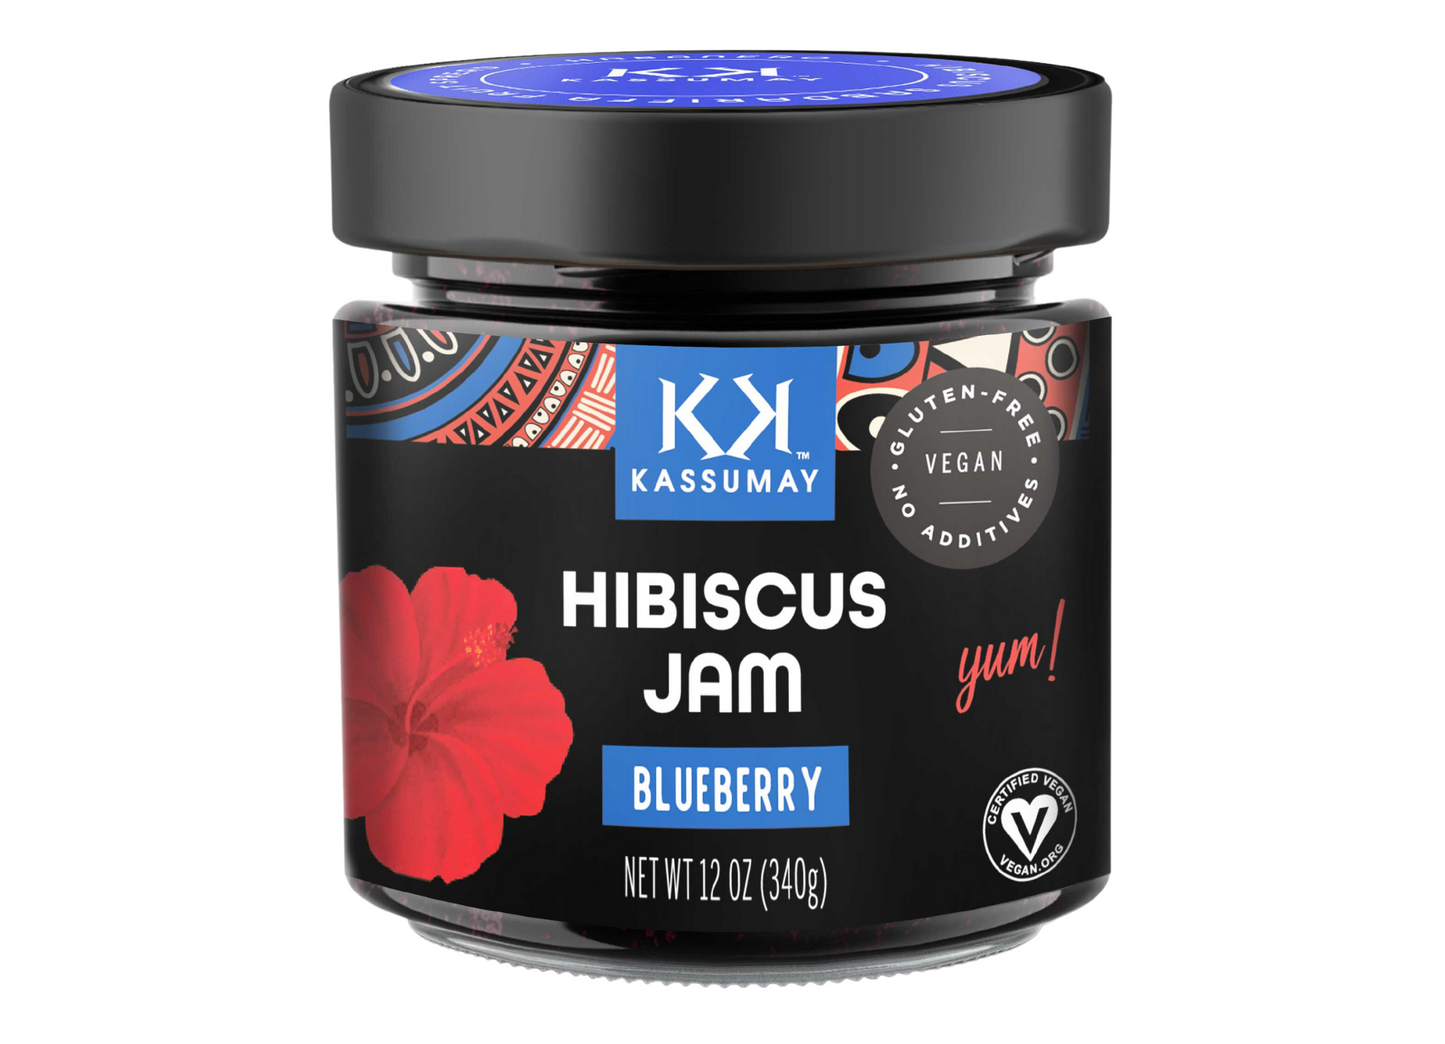 Blueberry hibiscus Jam